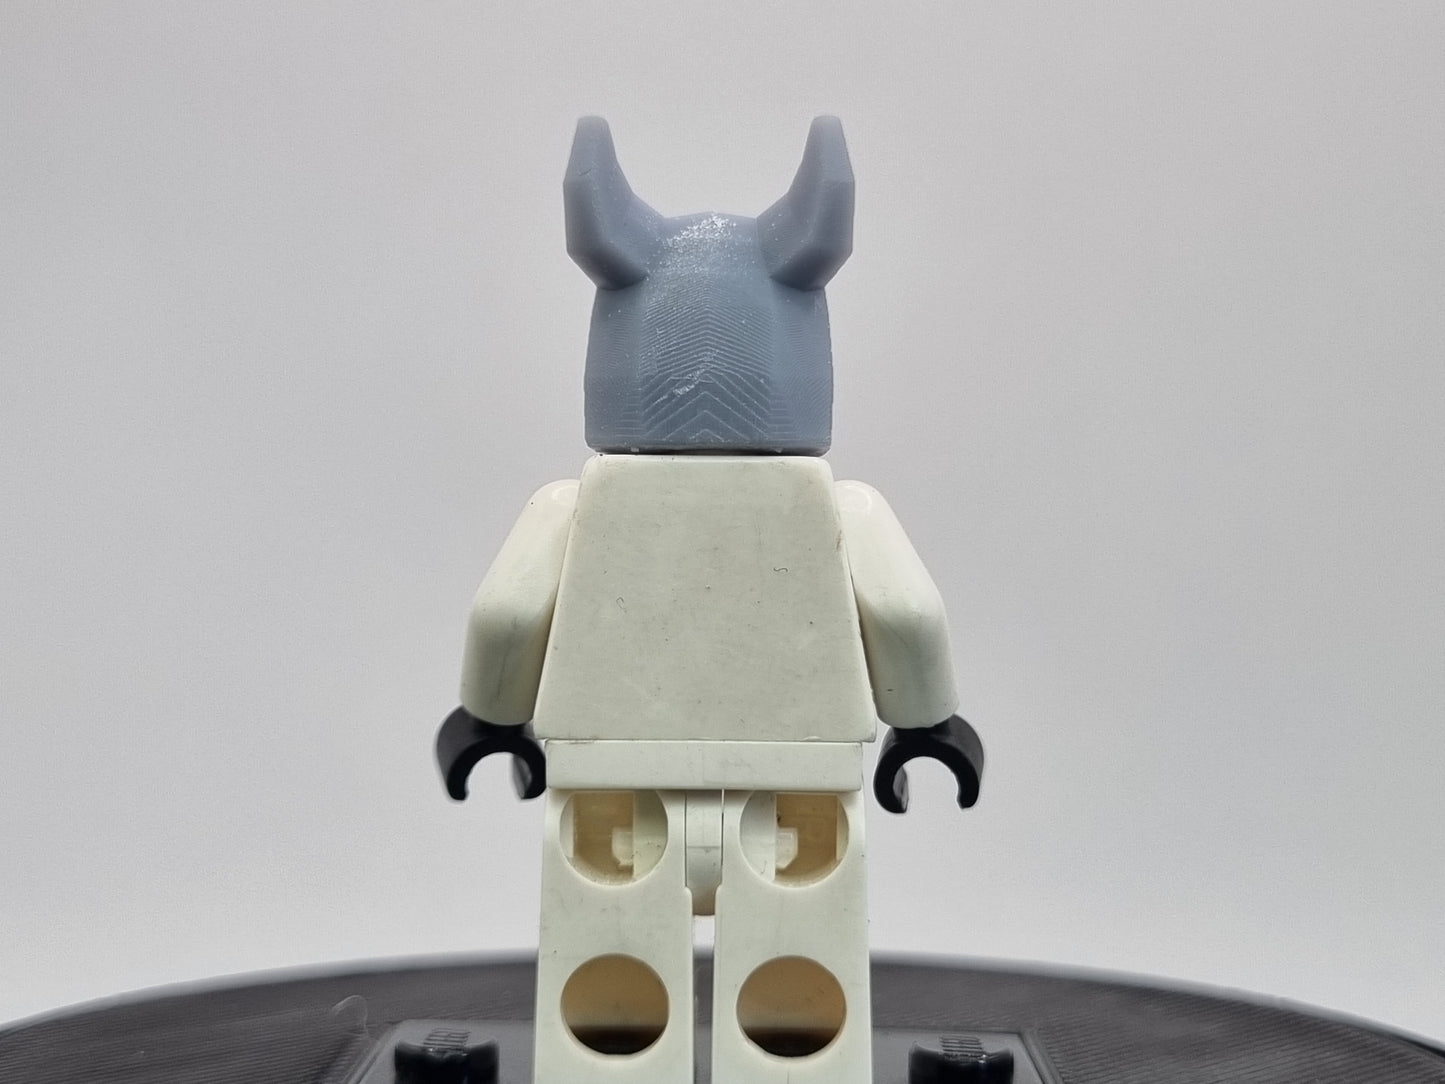 lego compatible 3D printed ninja rat head!